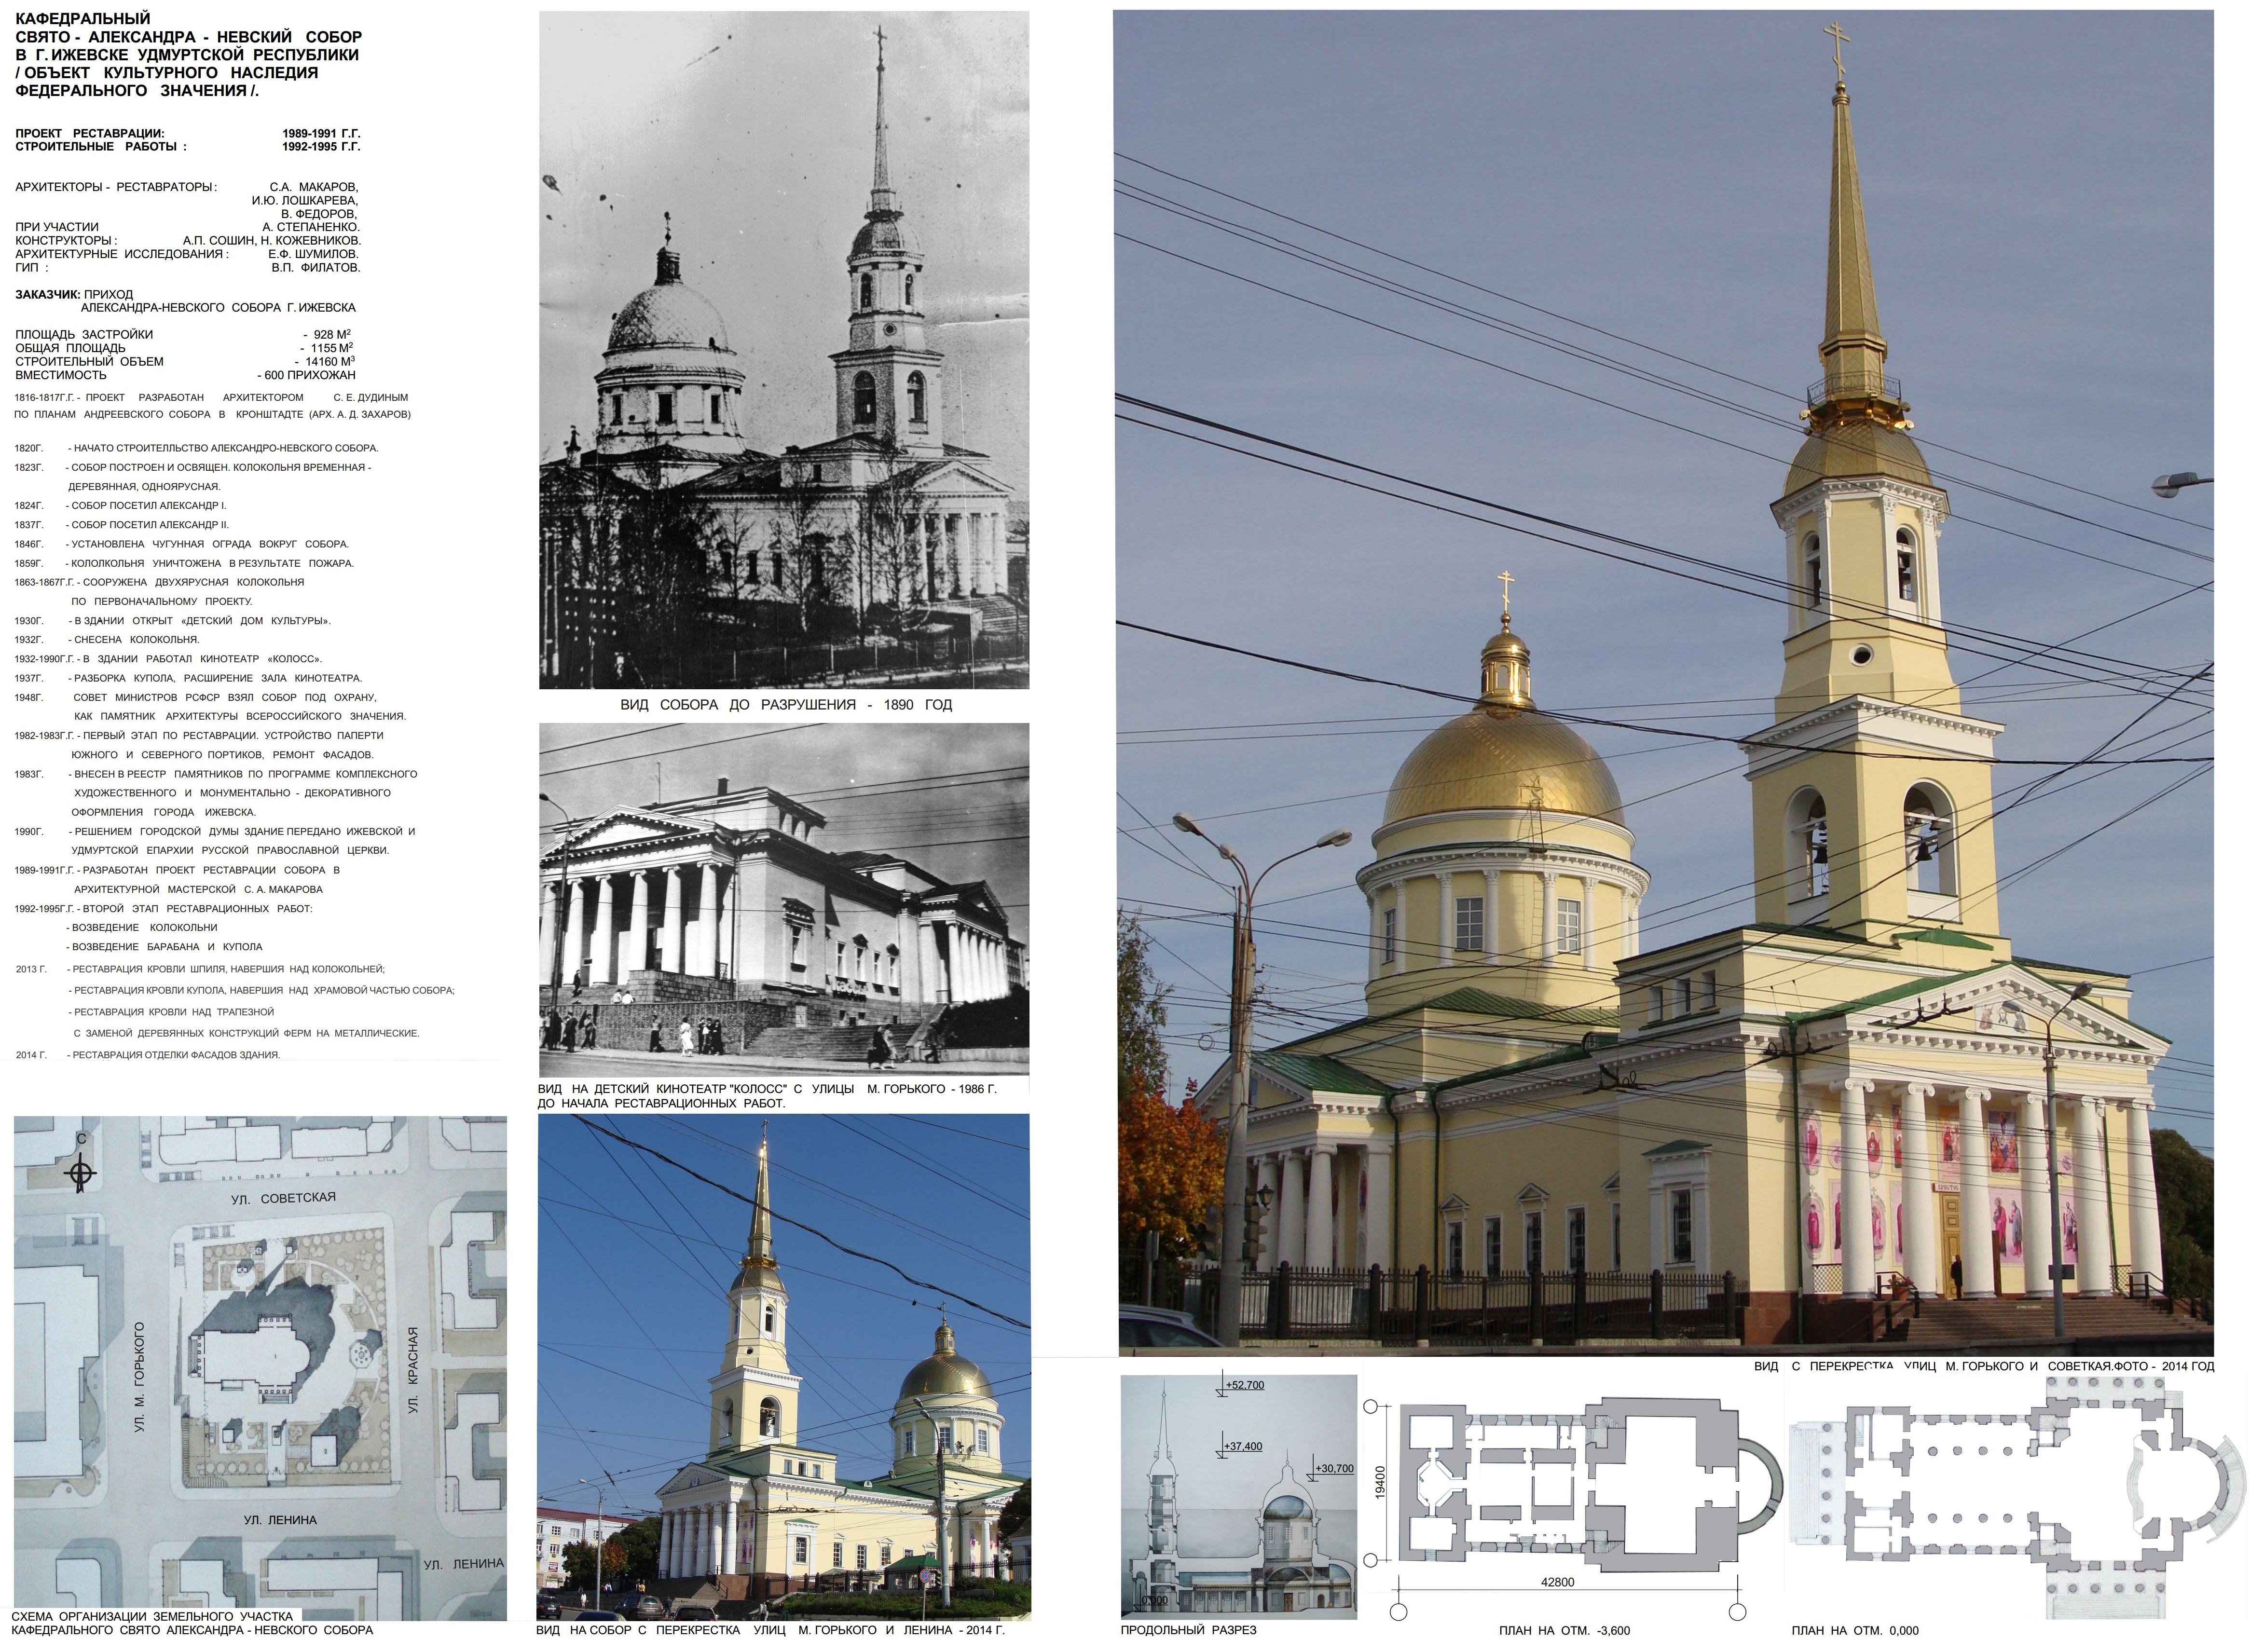 Материалы к проекту реставрации Александро-Невского собора. 1989—1991